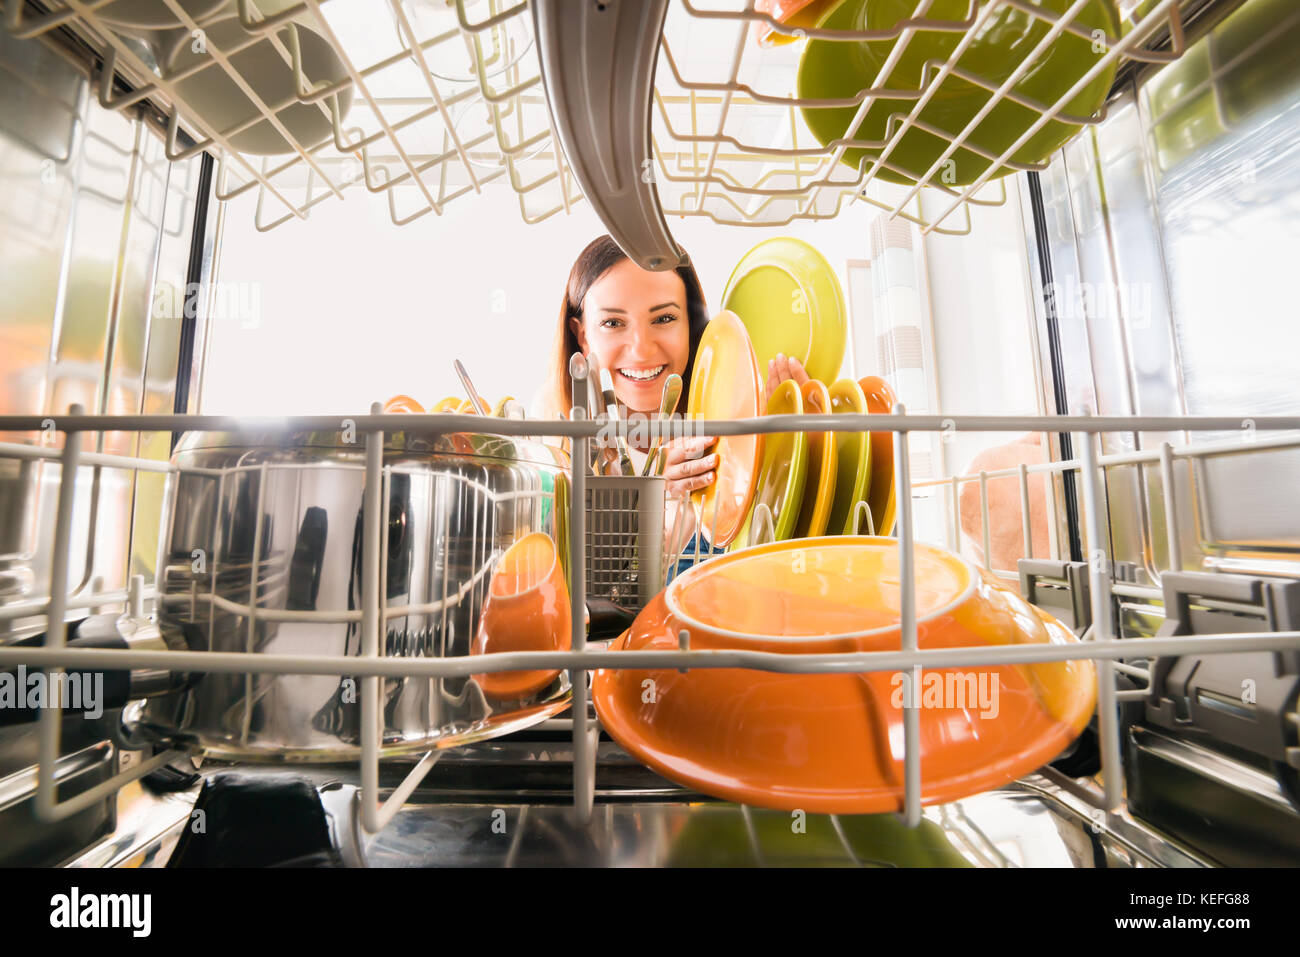 Jeune femme heureuse d'arranger des assiettes au lave-vaisselle Banque D'Images